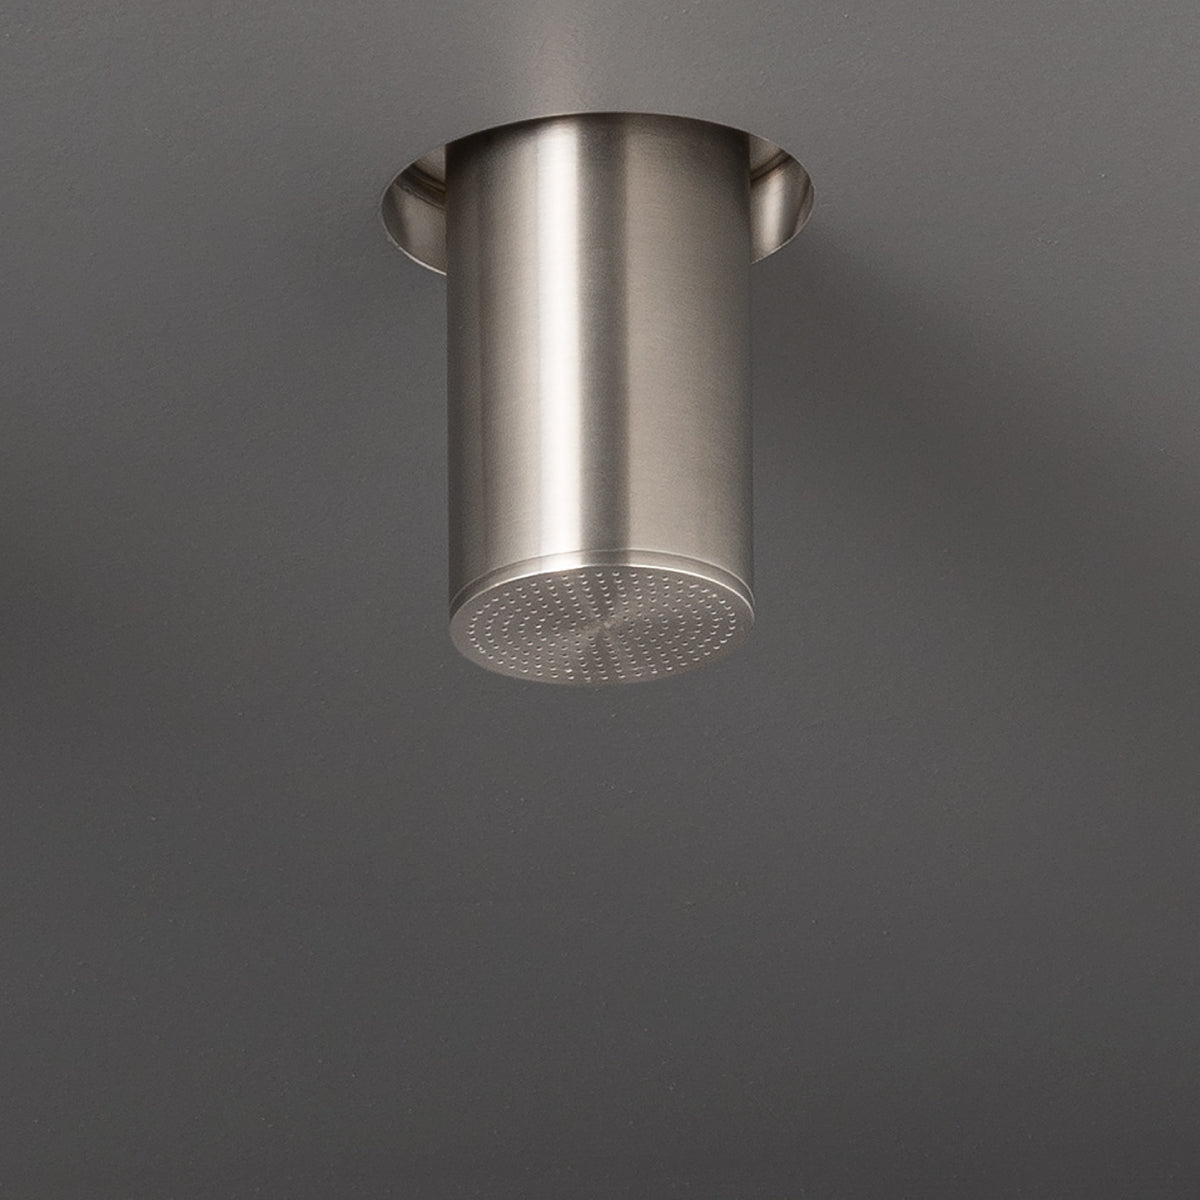 Ceadesign FREE IDEAS COLLECTION -Soffione doccia in acciaio con getto a pioggia areato, installazione a semi-incasso- FRE120+INC08